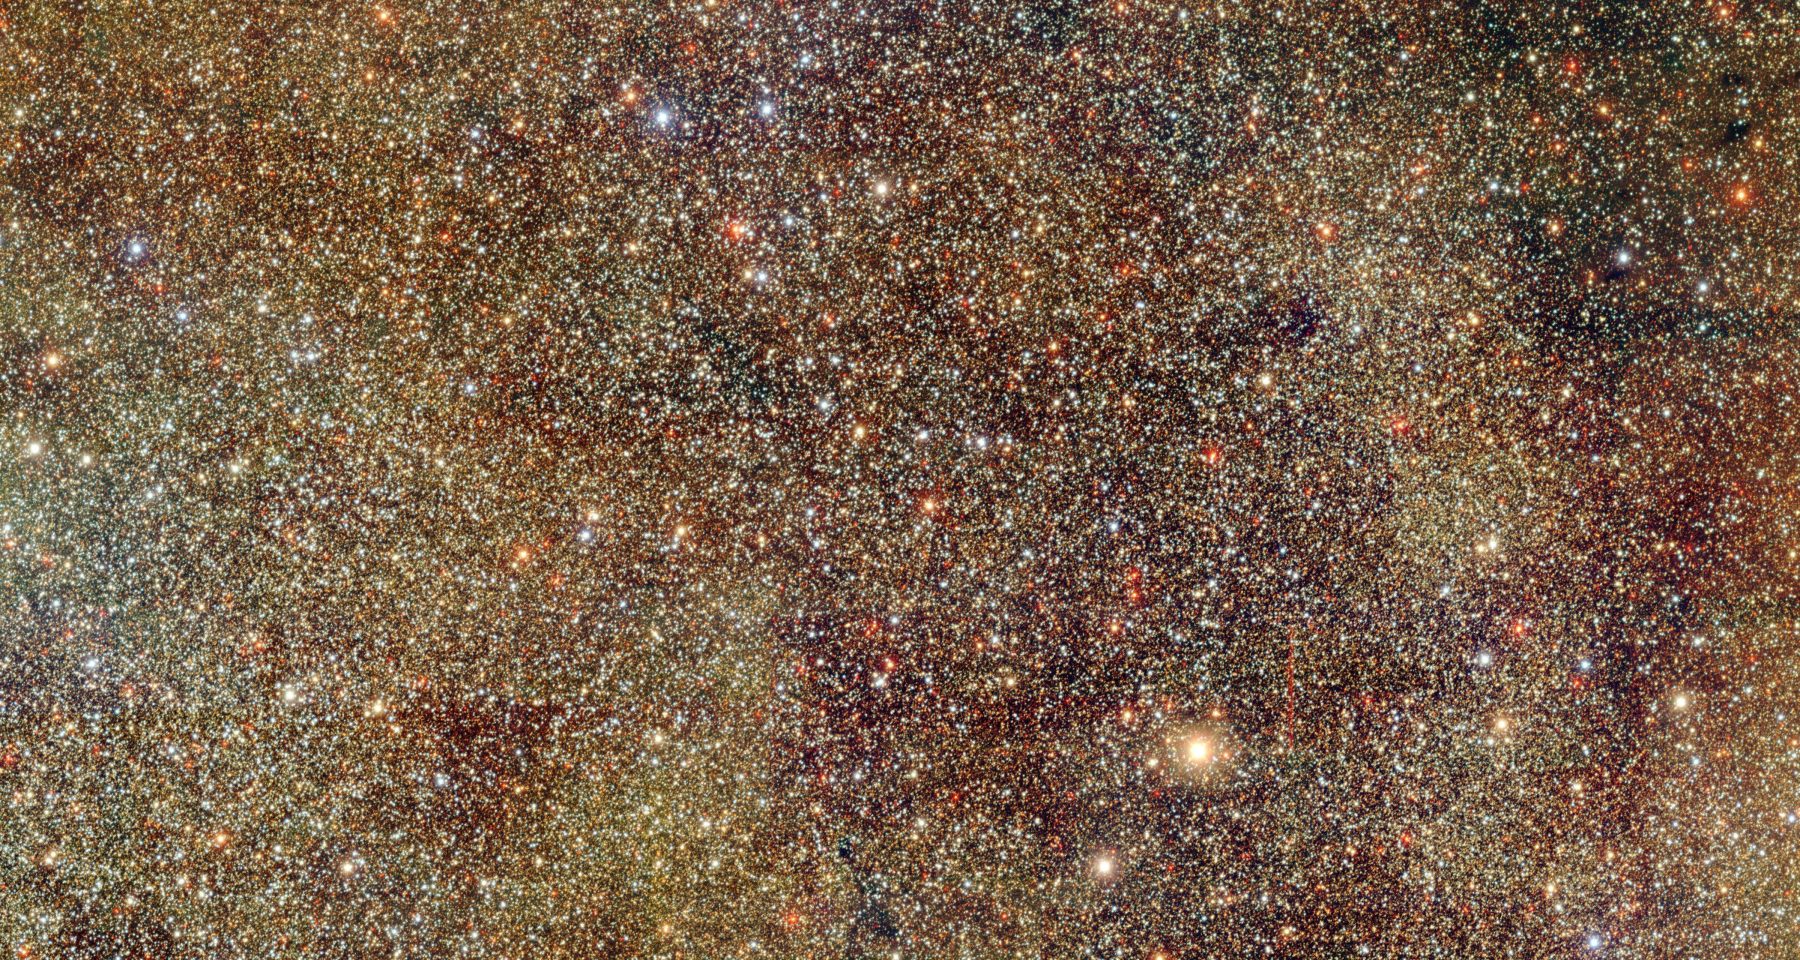 Миллиарды космических объектов обнаружены в новом обзоре Млечного Пути